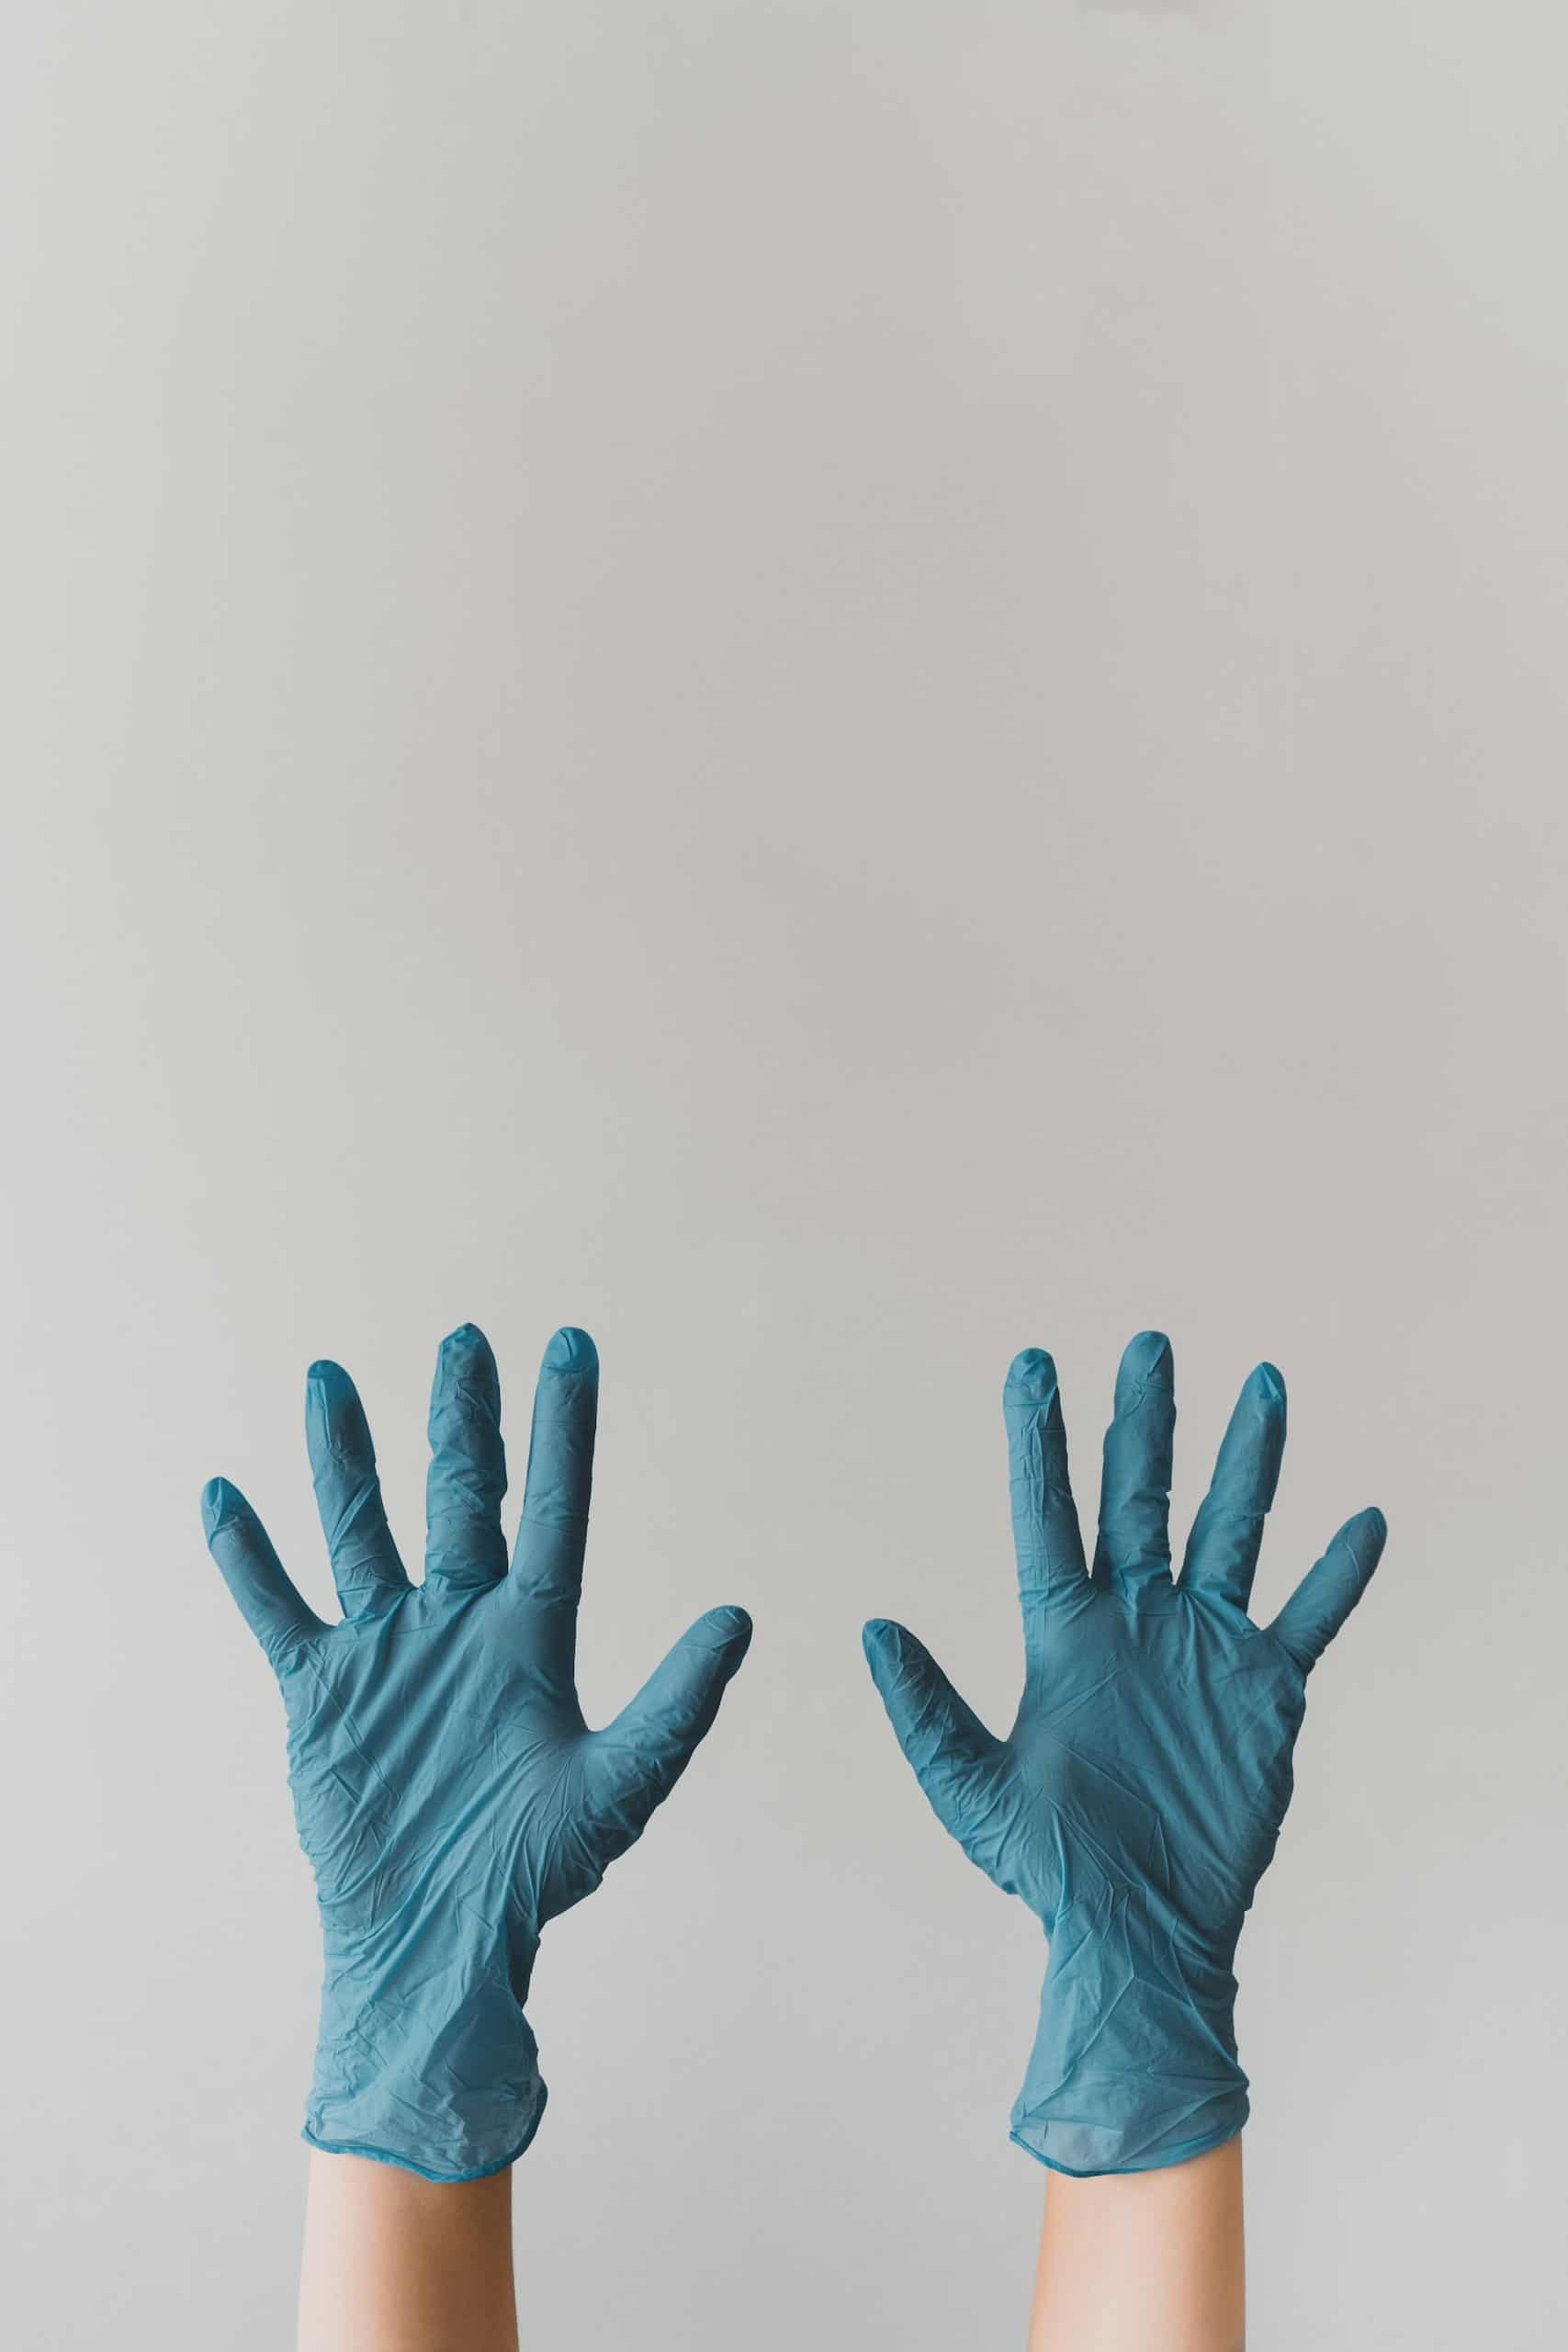 Co warto wiedzieć na temat rękawiczek jednorazowych?